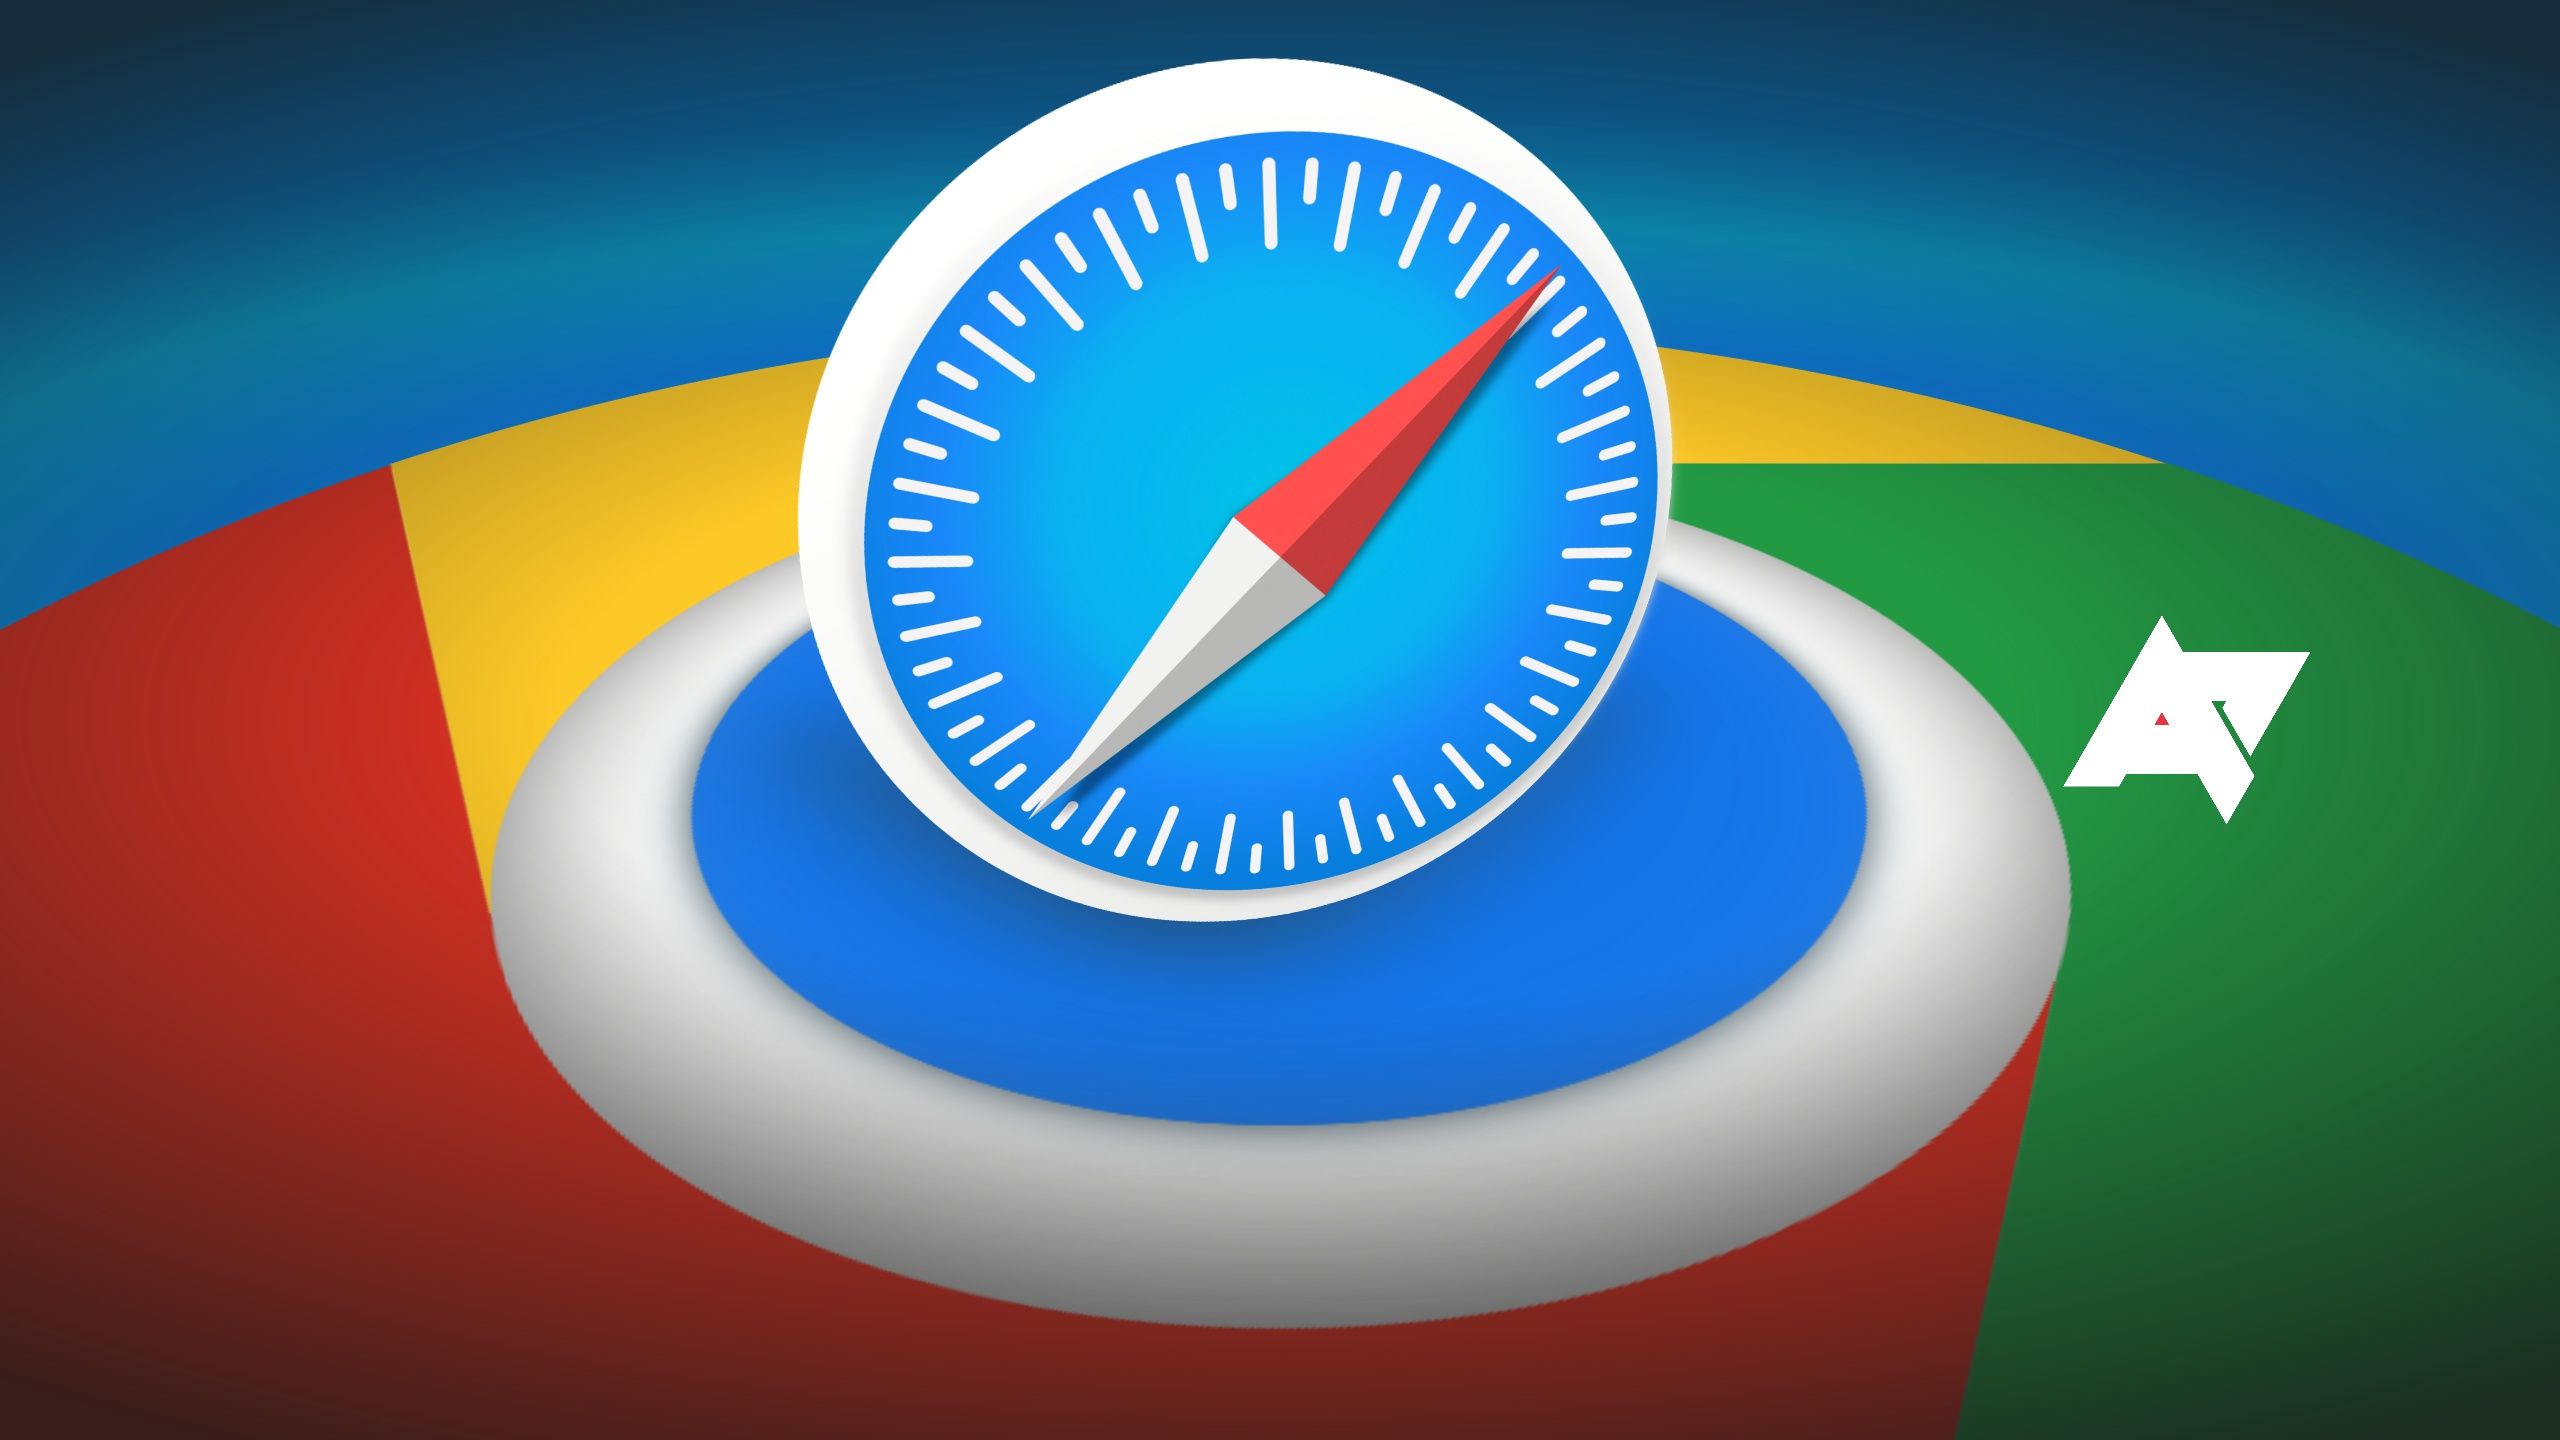 The Safari logo placed over the Chrome logo.